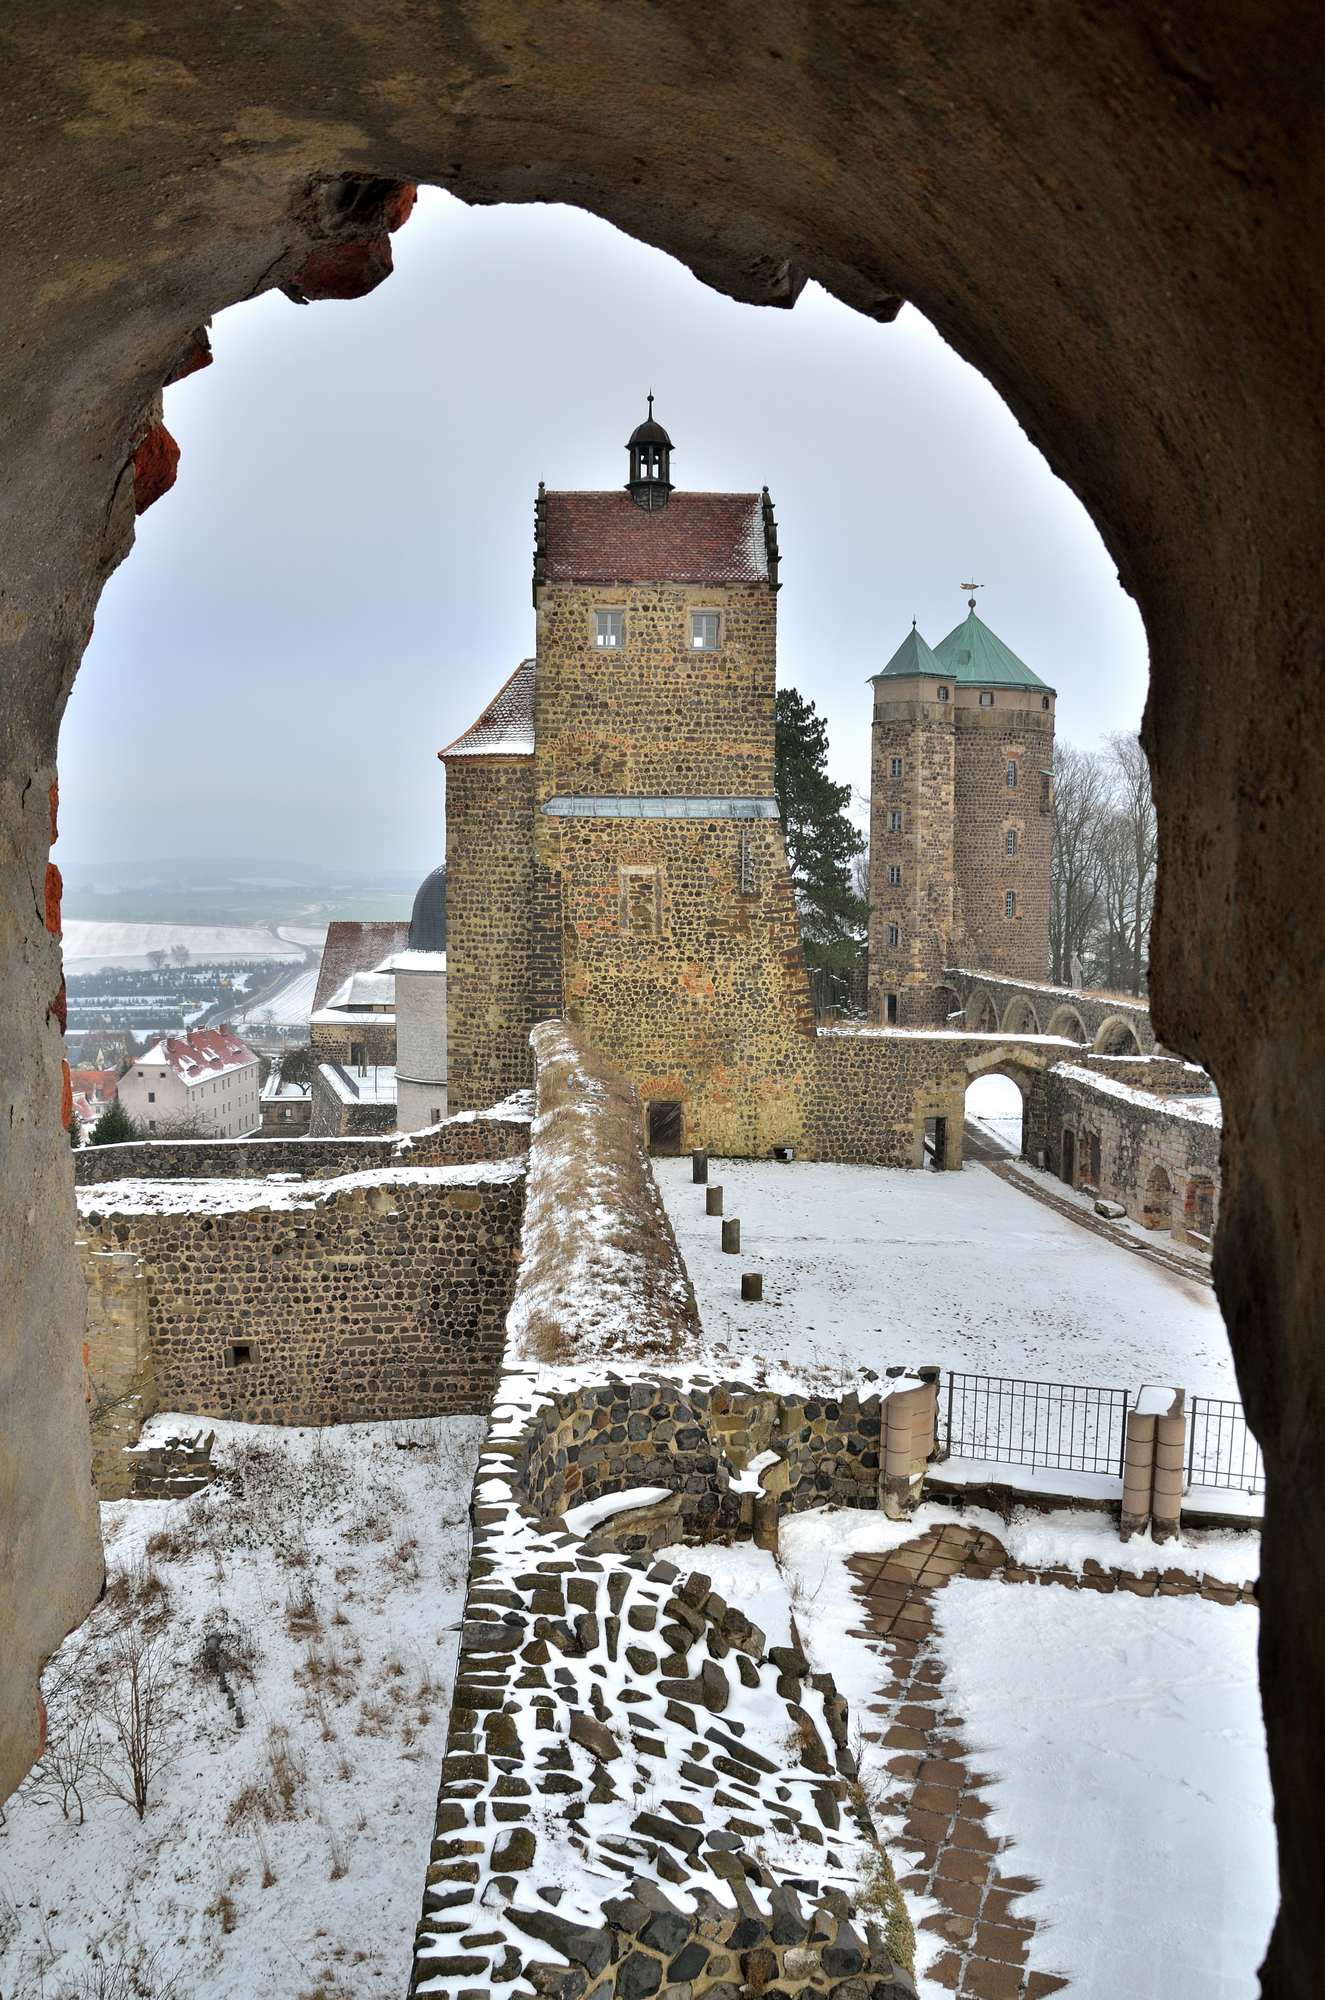 Зайгер-башня и башня Козель крепости Штольпен в Саксонской Швейцарии